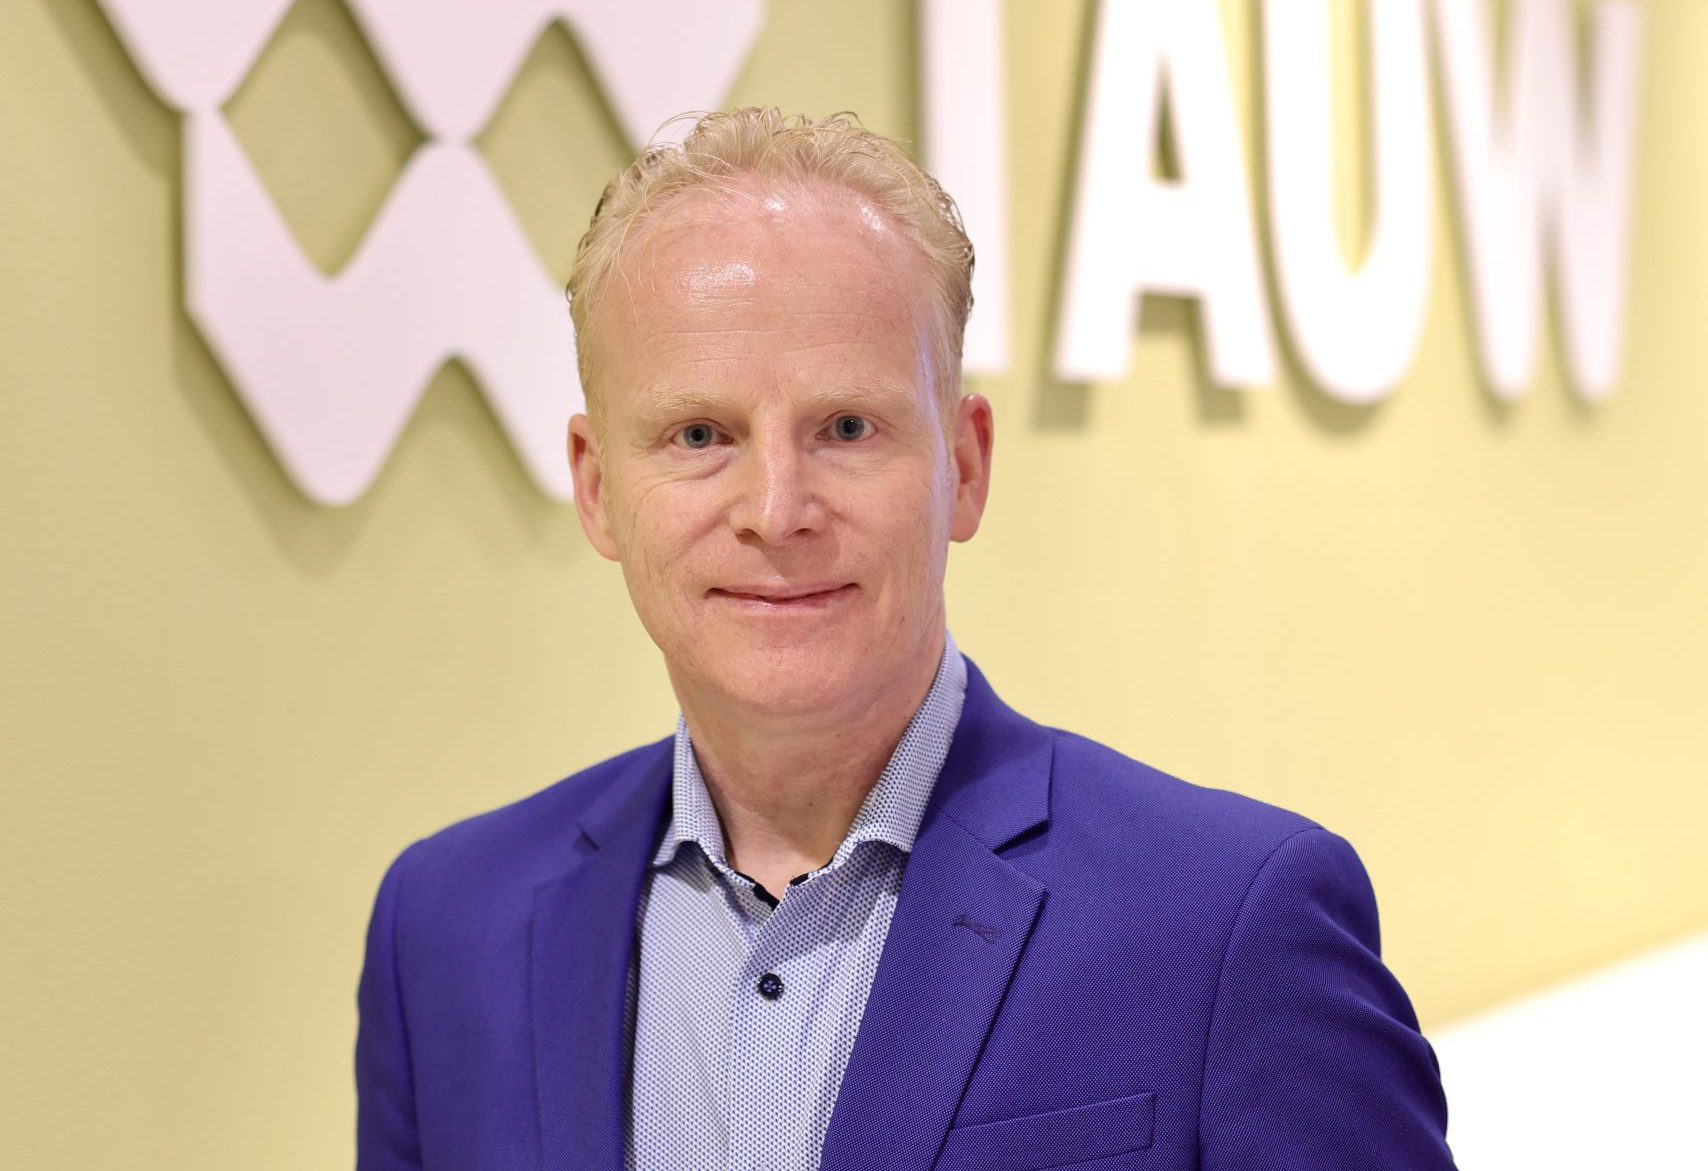 Henry Raben benoemd tot directeur TAUW Nederland